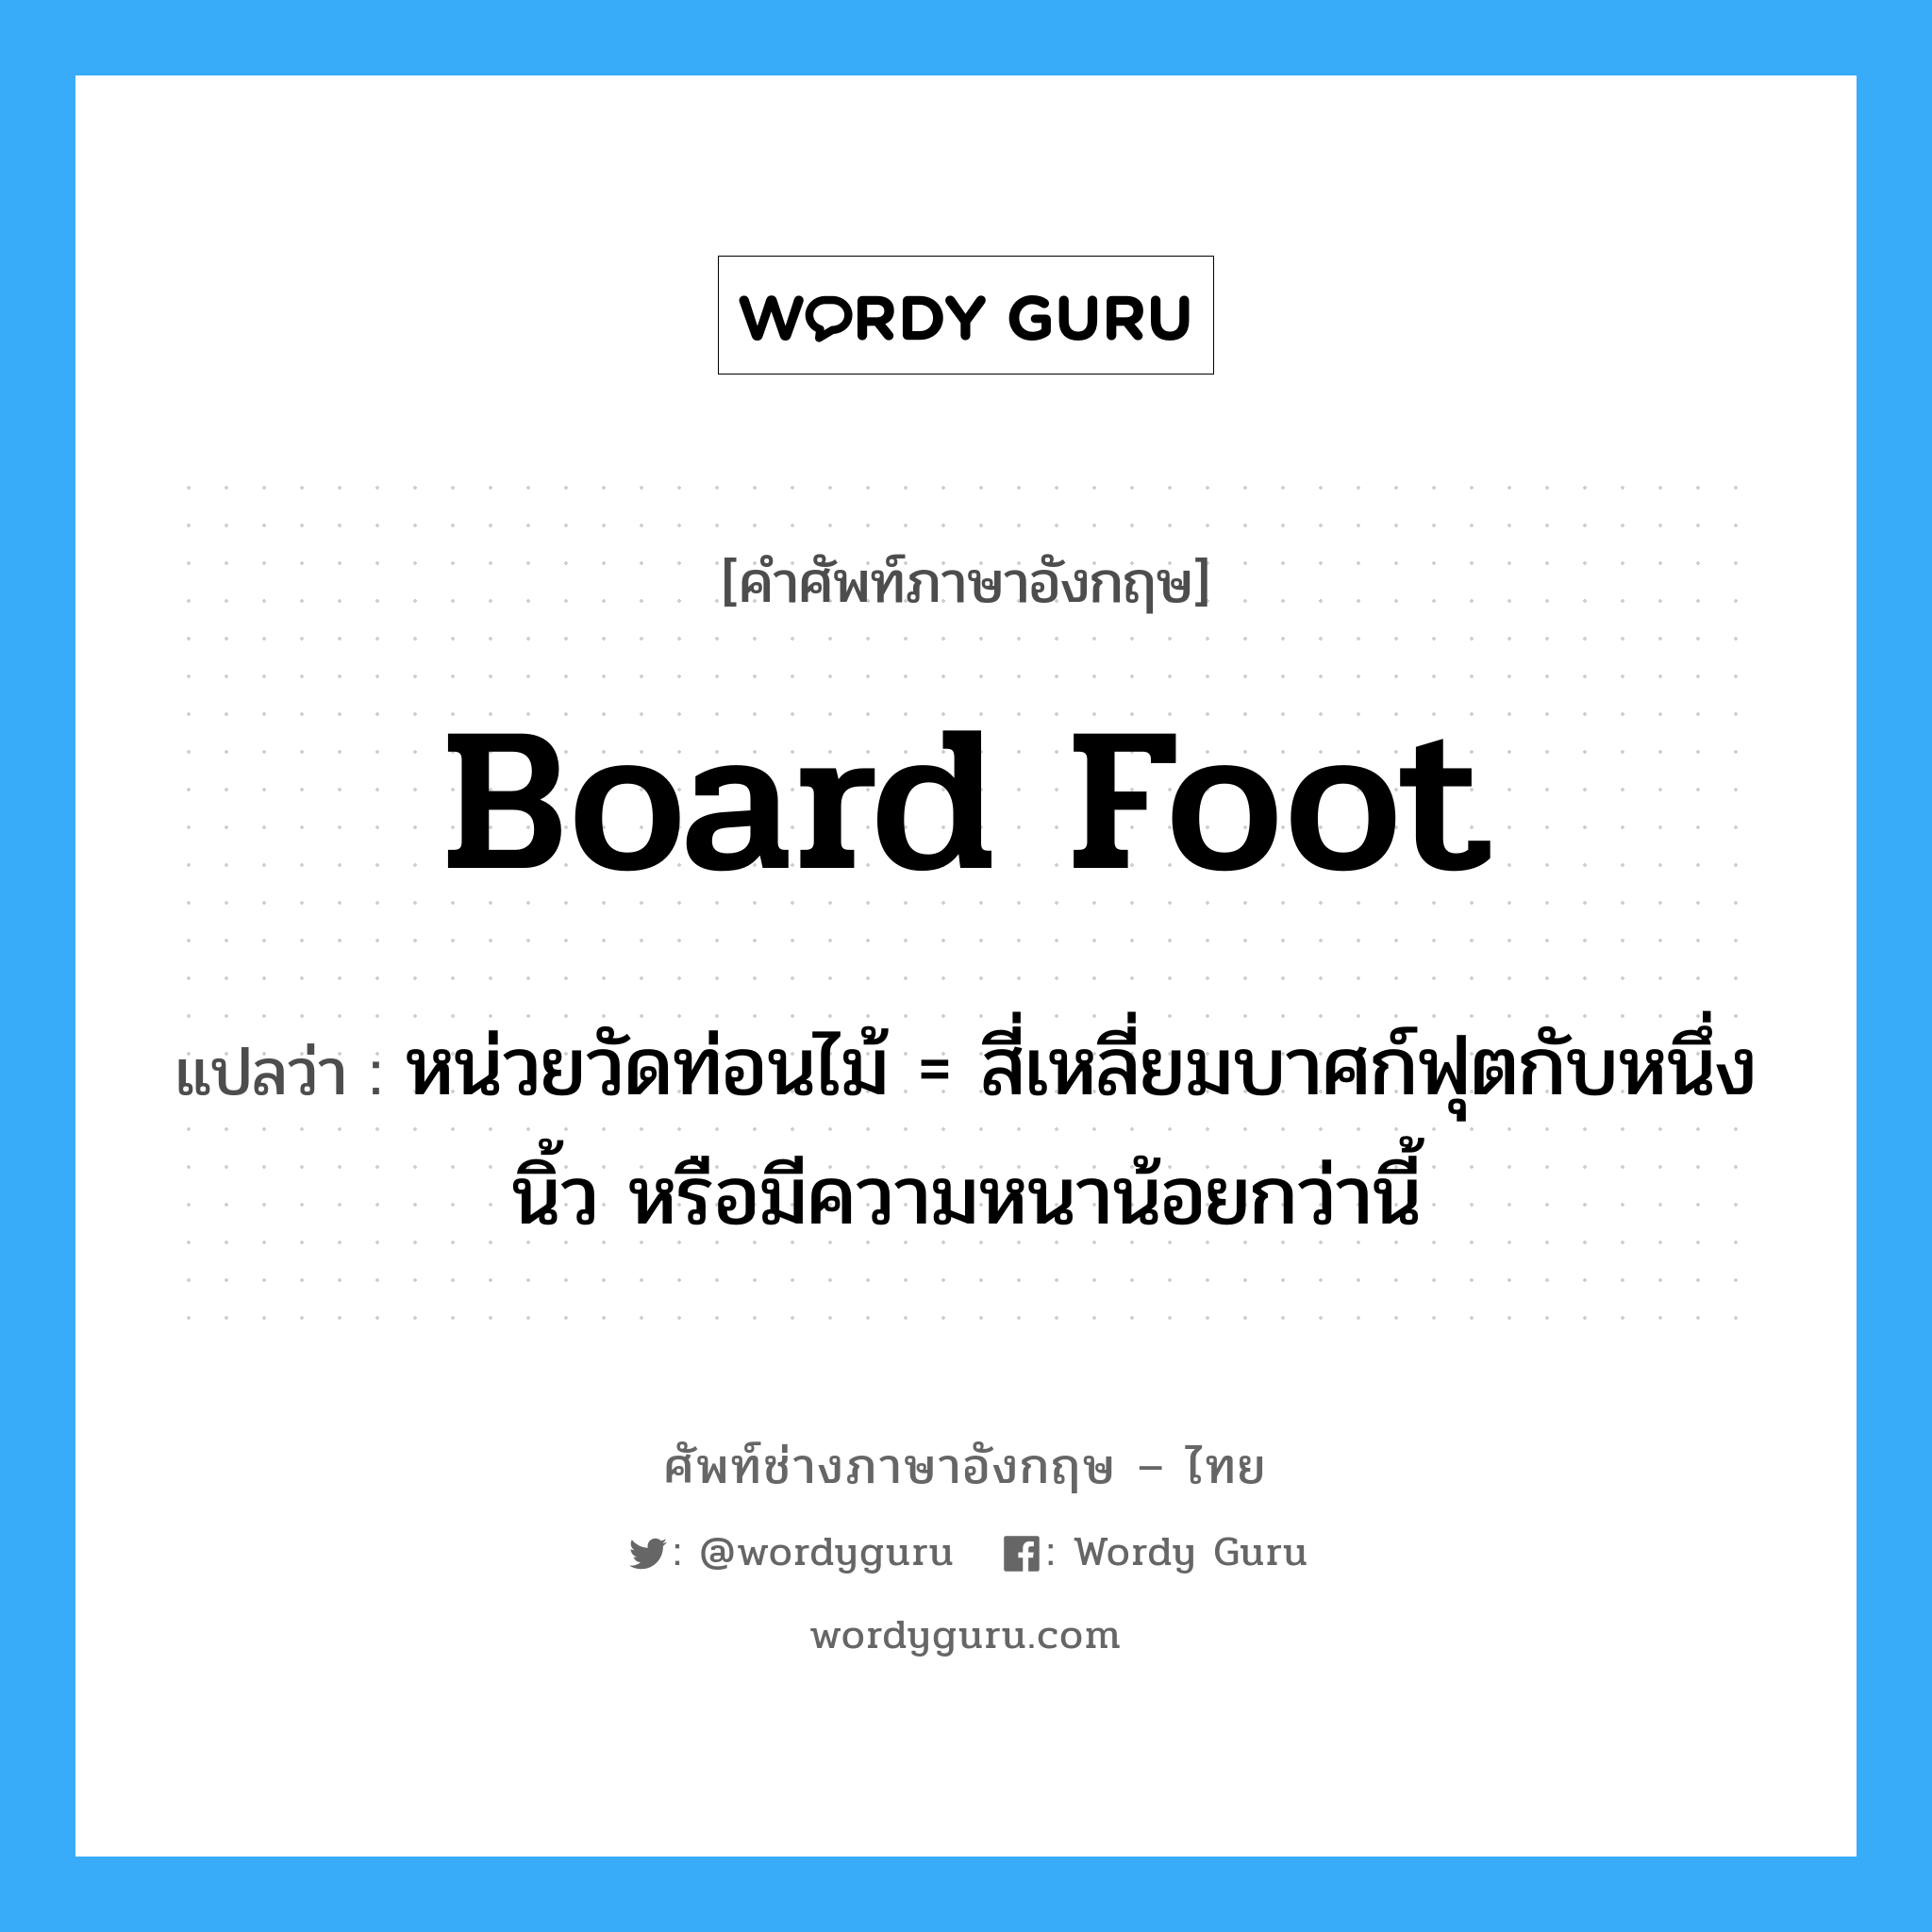 board foot แปลว่า?, คำศัพท์ช่างภาษาอังกฤษ - ไทย board foot คำศัพท์ภาษาอังกฤษ board foot แปลว่า หน่วยวัดท่อนไม้ = สี่เหลี่ยมบาศก์ฟุตกับหนึ่งนิ้ว หรือมีความหนาน้อยกว่านี้